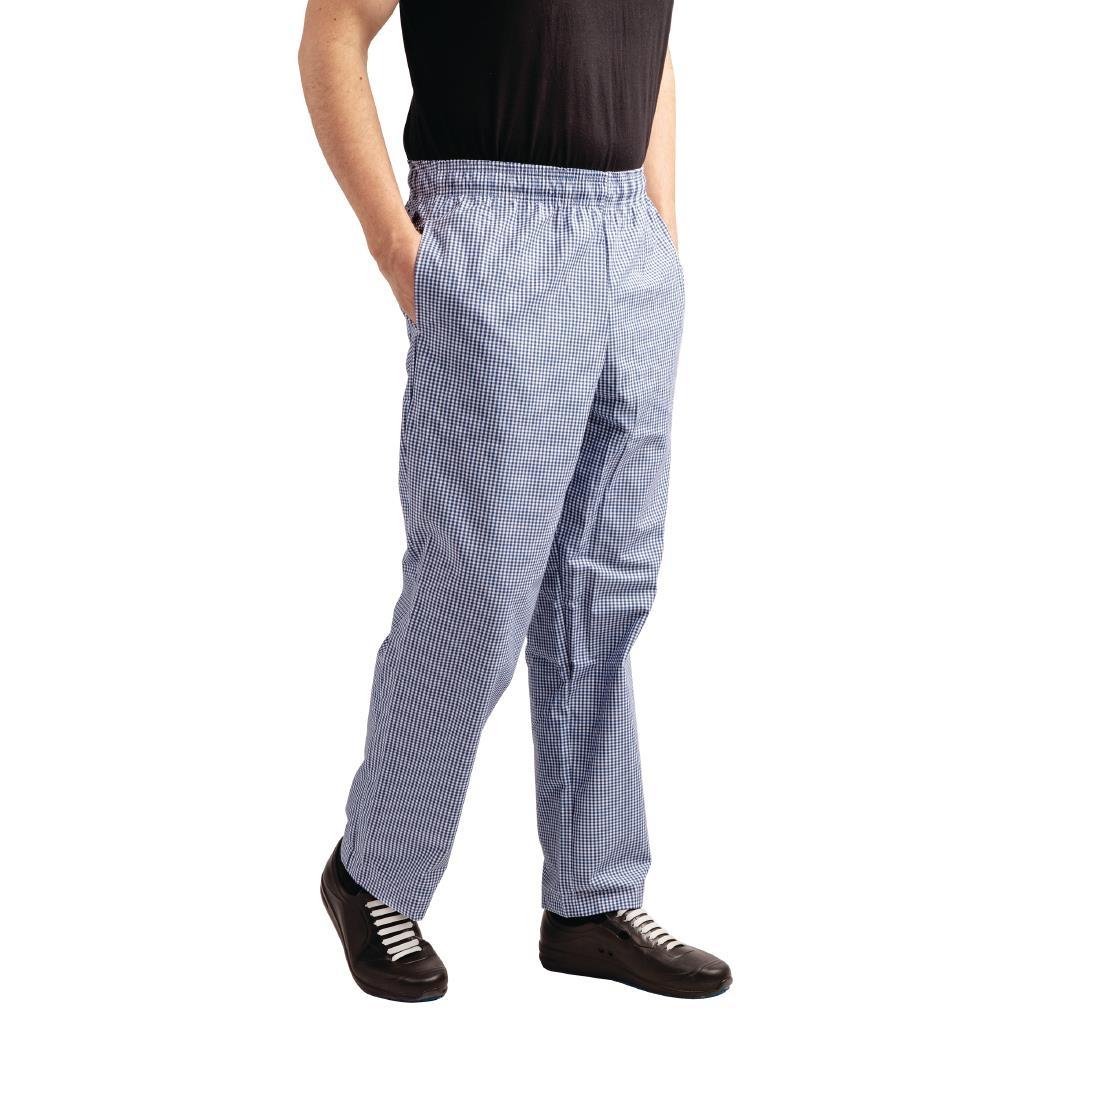 Whites Easyfit Trousers Teflon Blue Check S - A025T-S  - 6